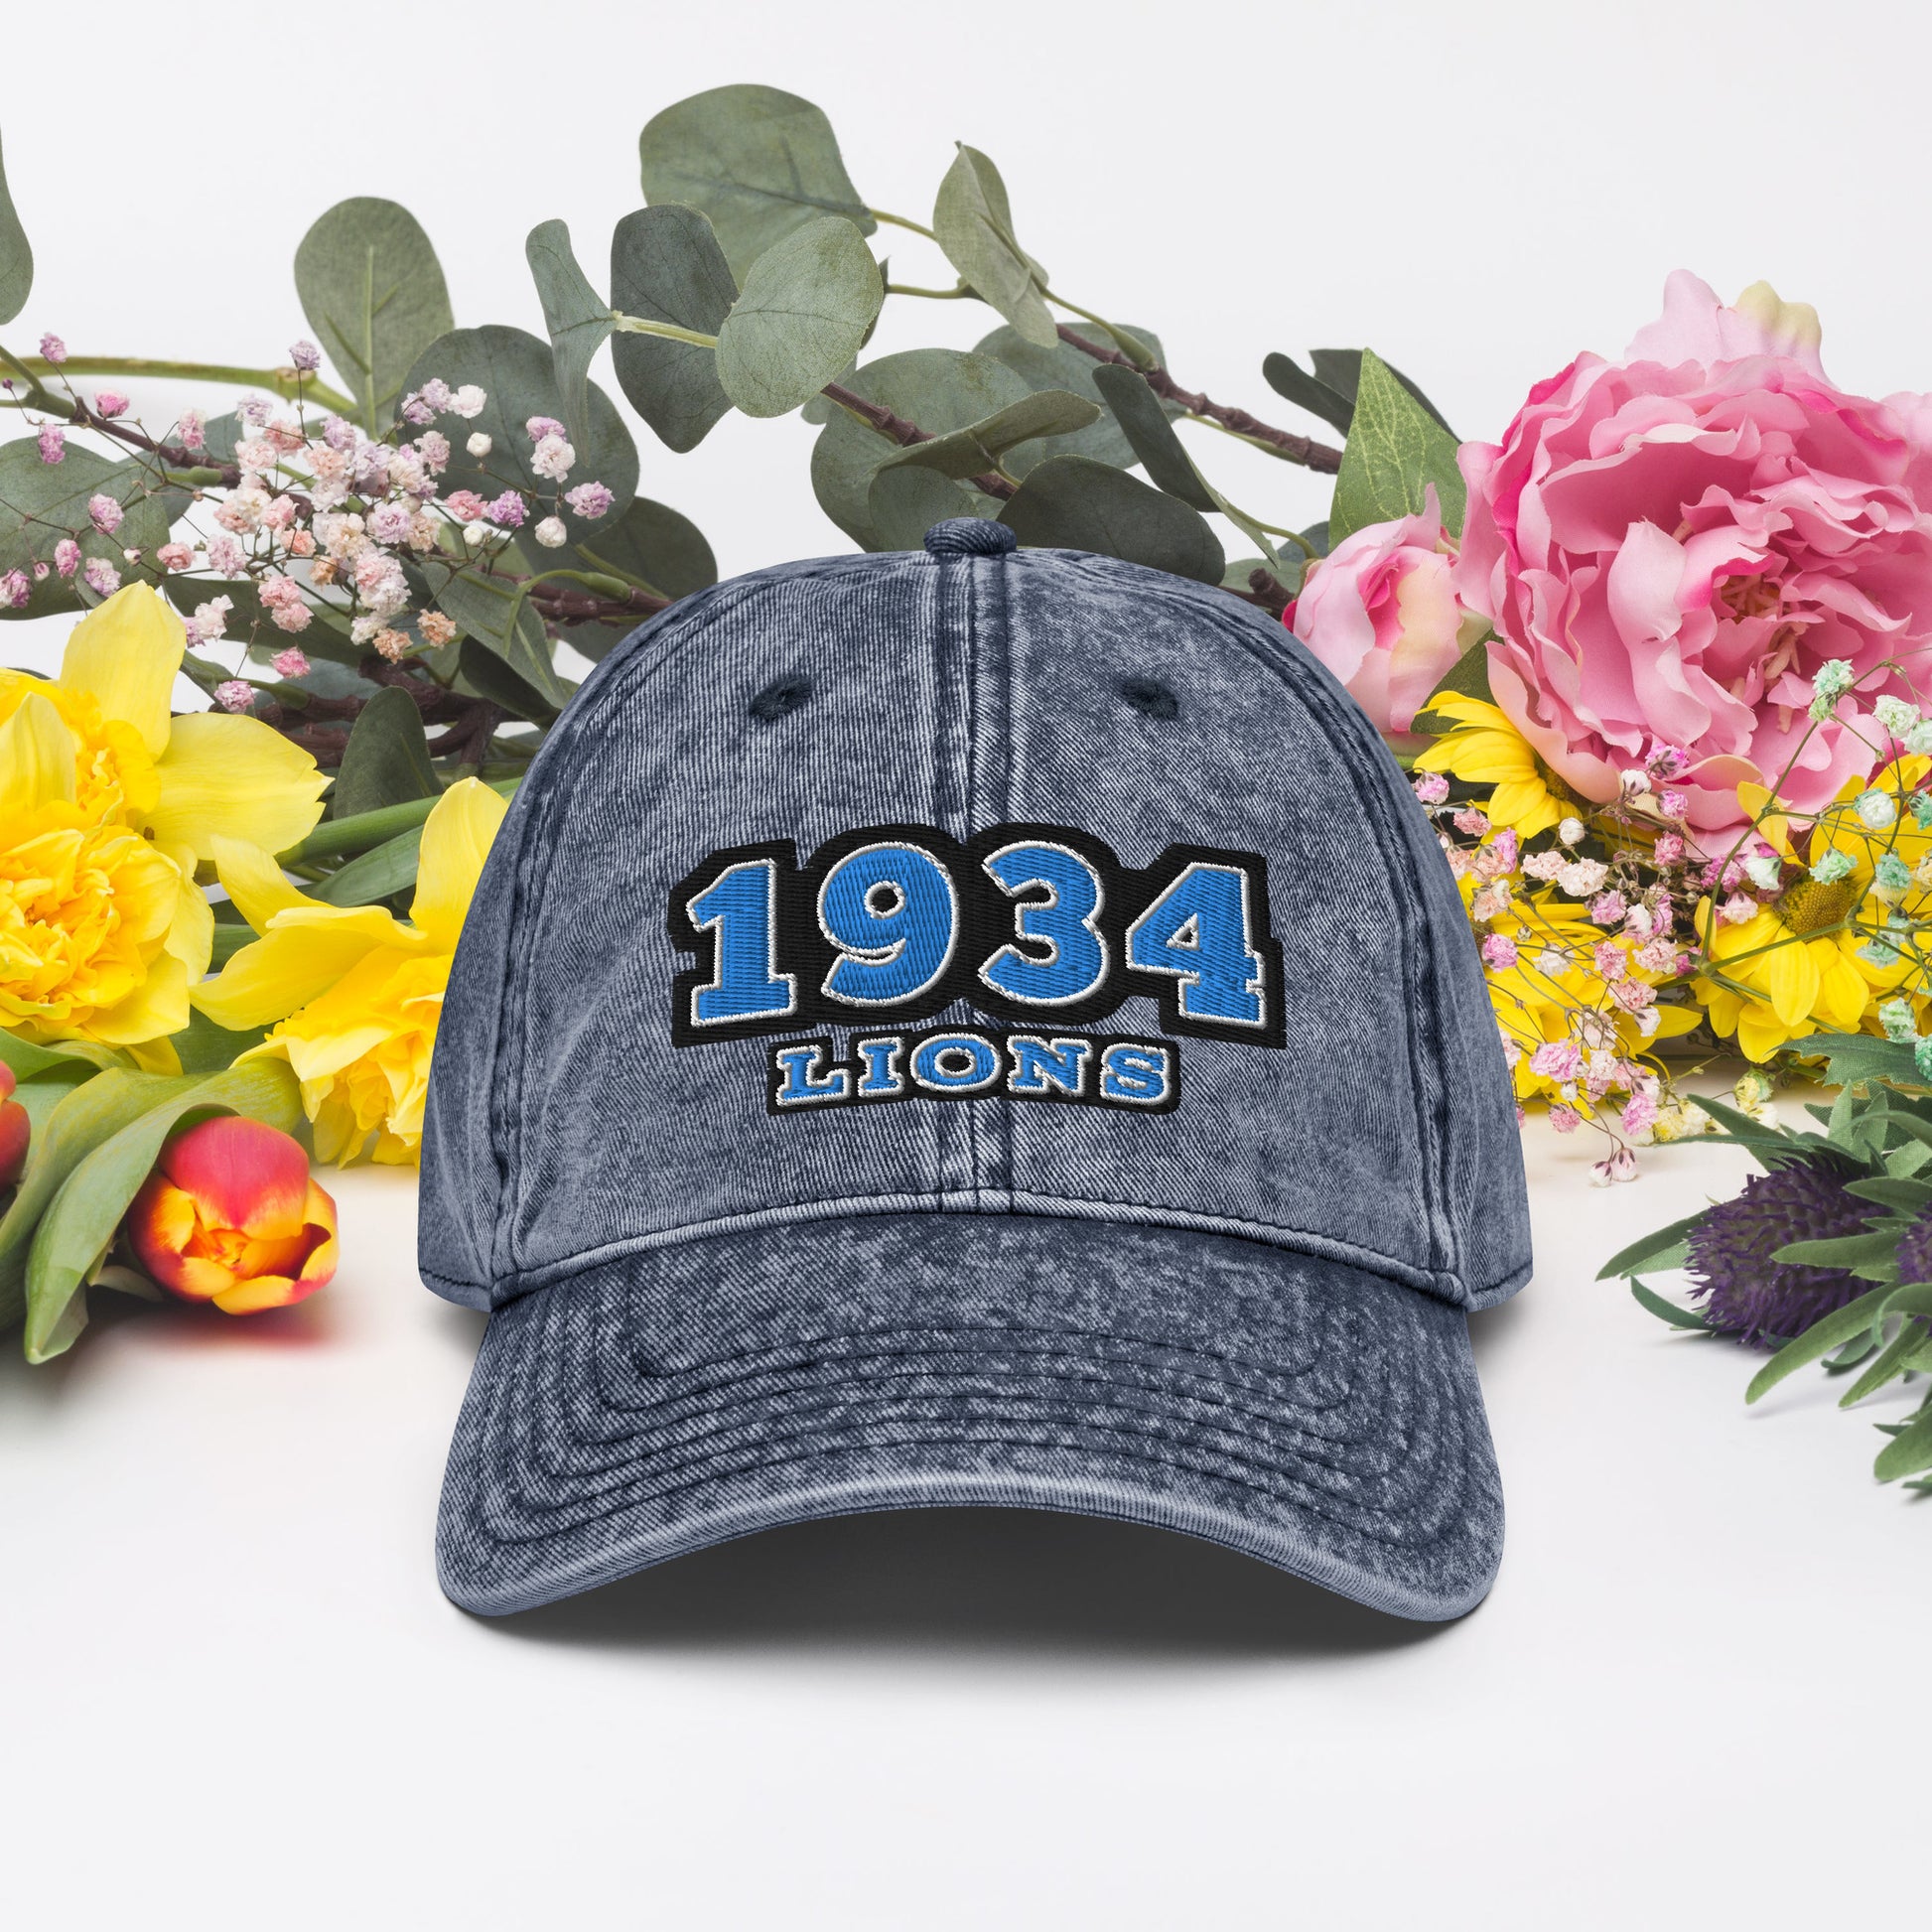 Lions hat / 1934 hat / gift hat / lions 1934 Vintage Cotton Twill Cap